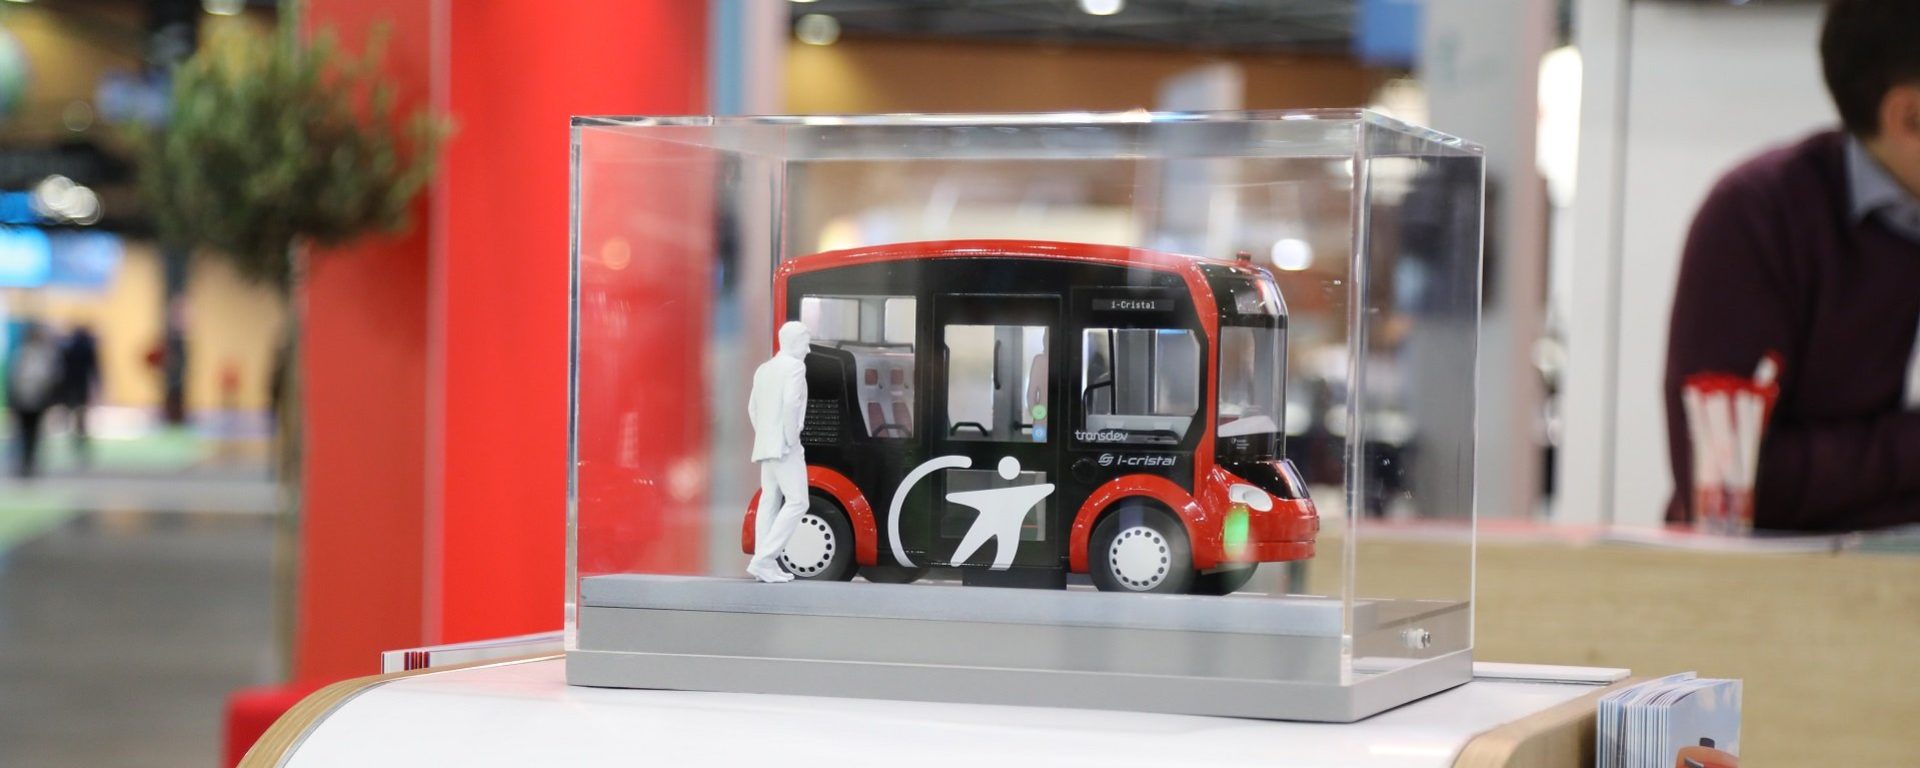 Transdev stand salon EVS Lyon mobilité propre électrique navette autonome i-Cristal